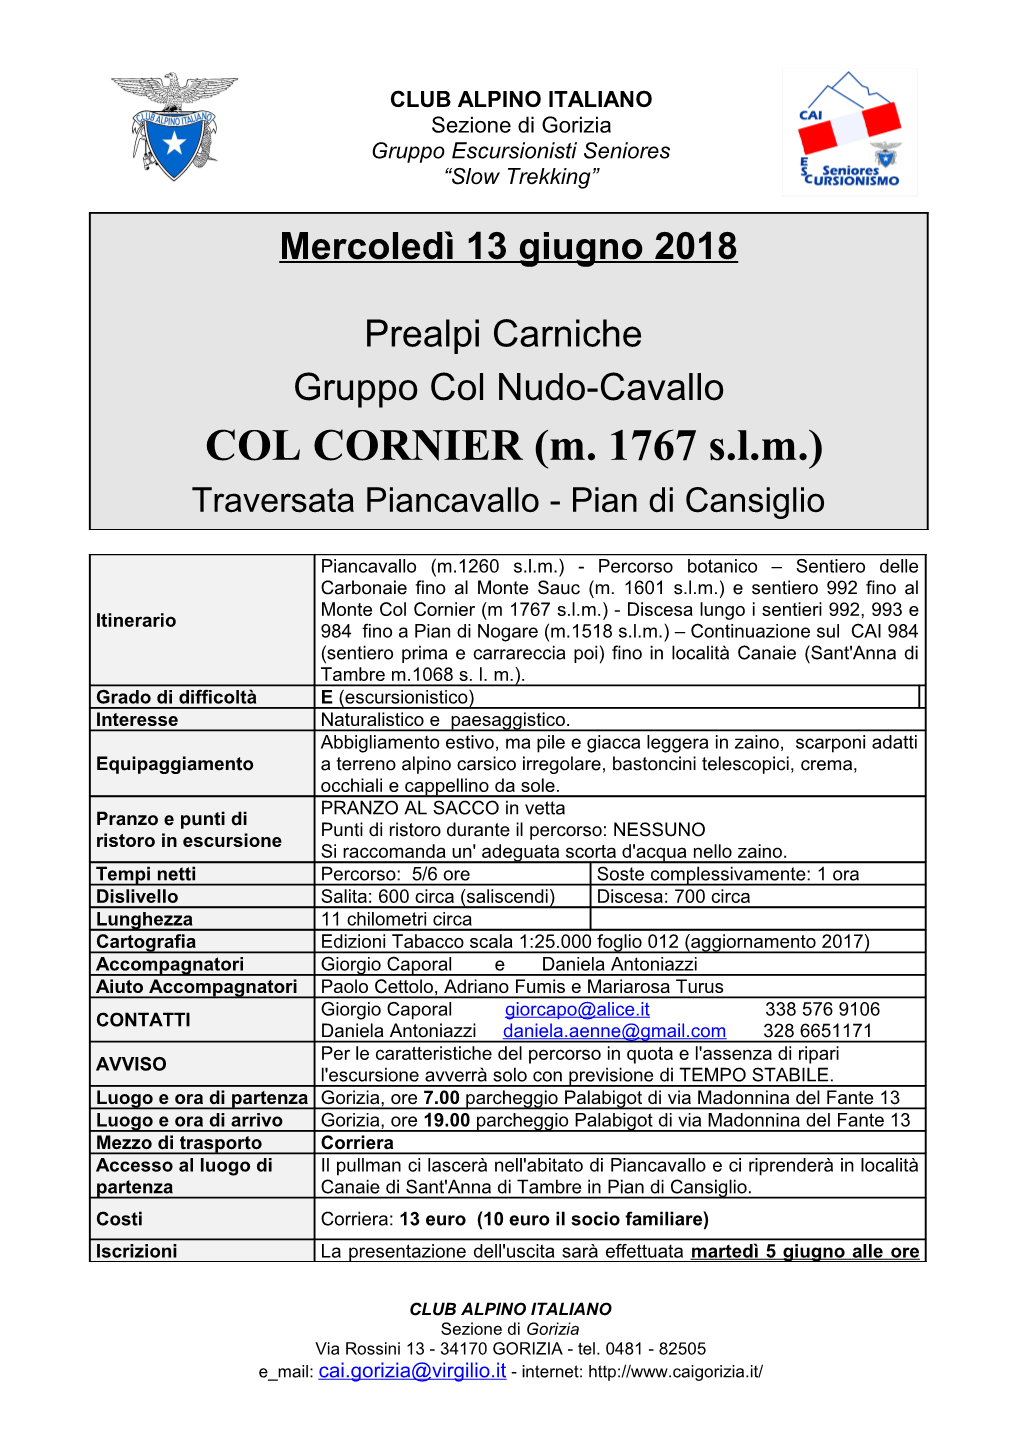 COL CORNIER (M. 1767 S.L.M.) Traversata Piancavallo - Pian Di Cansiglio